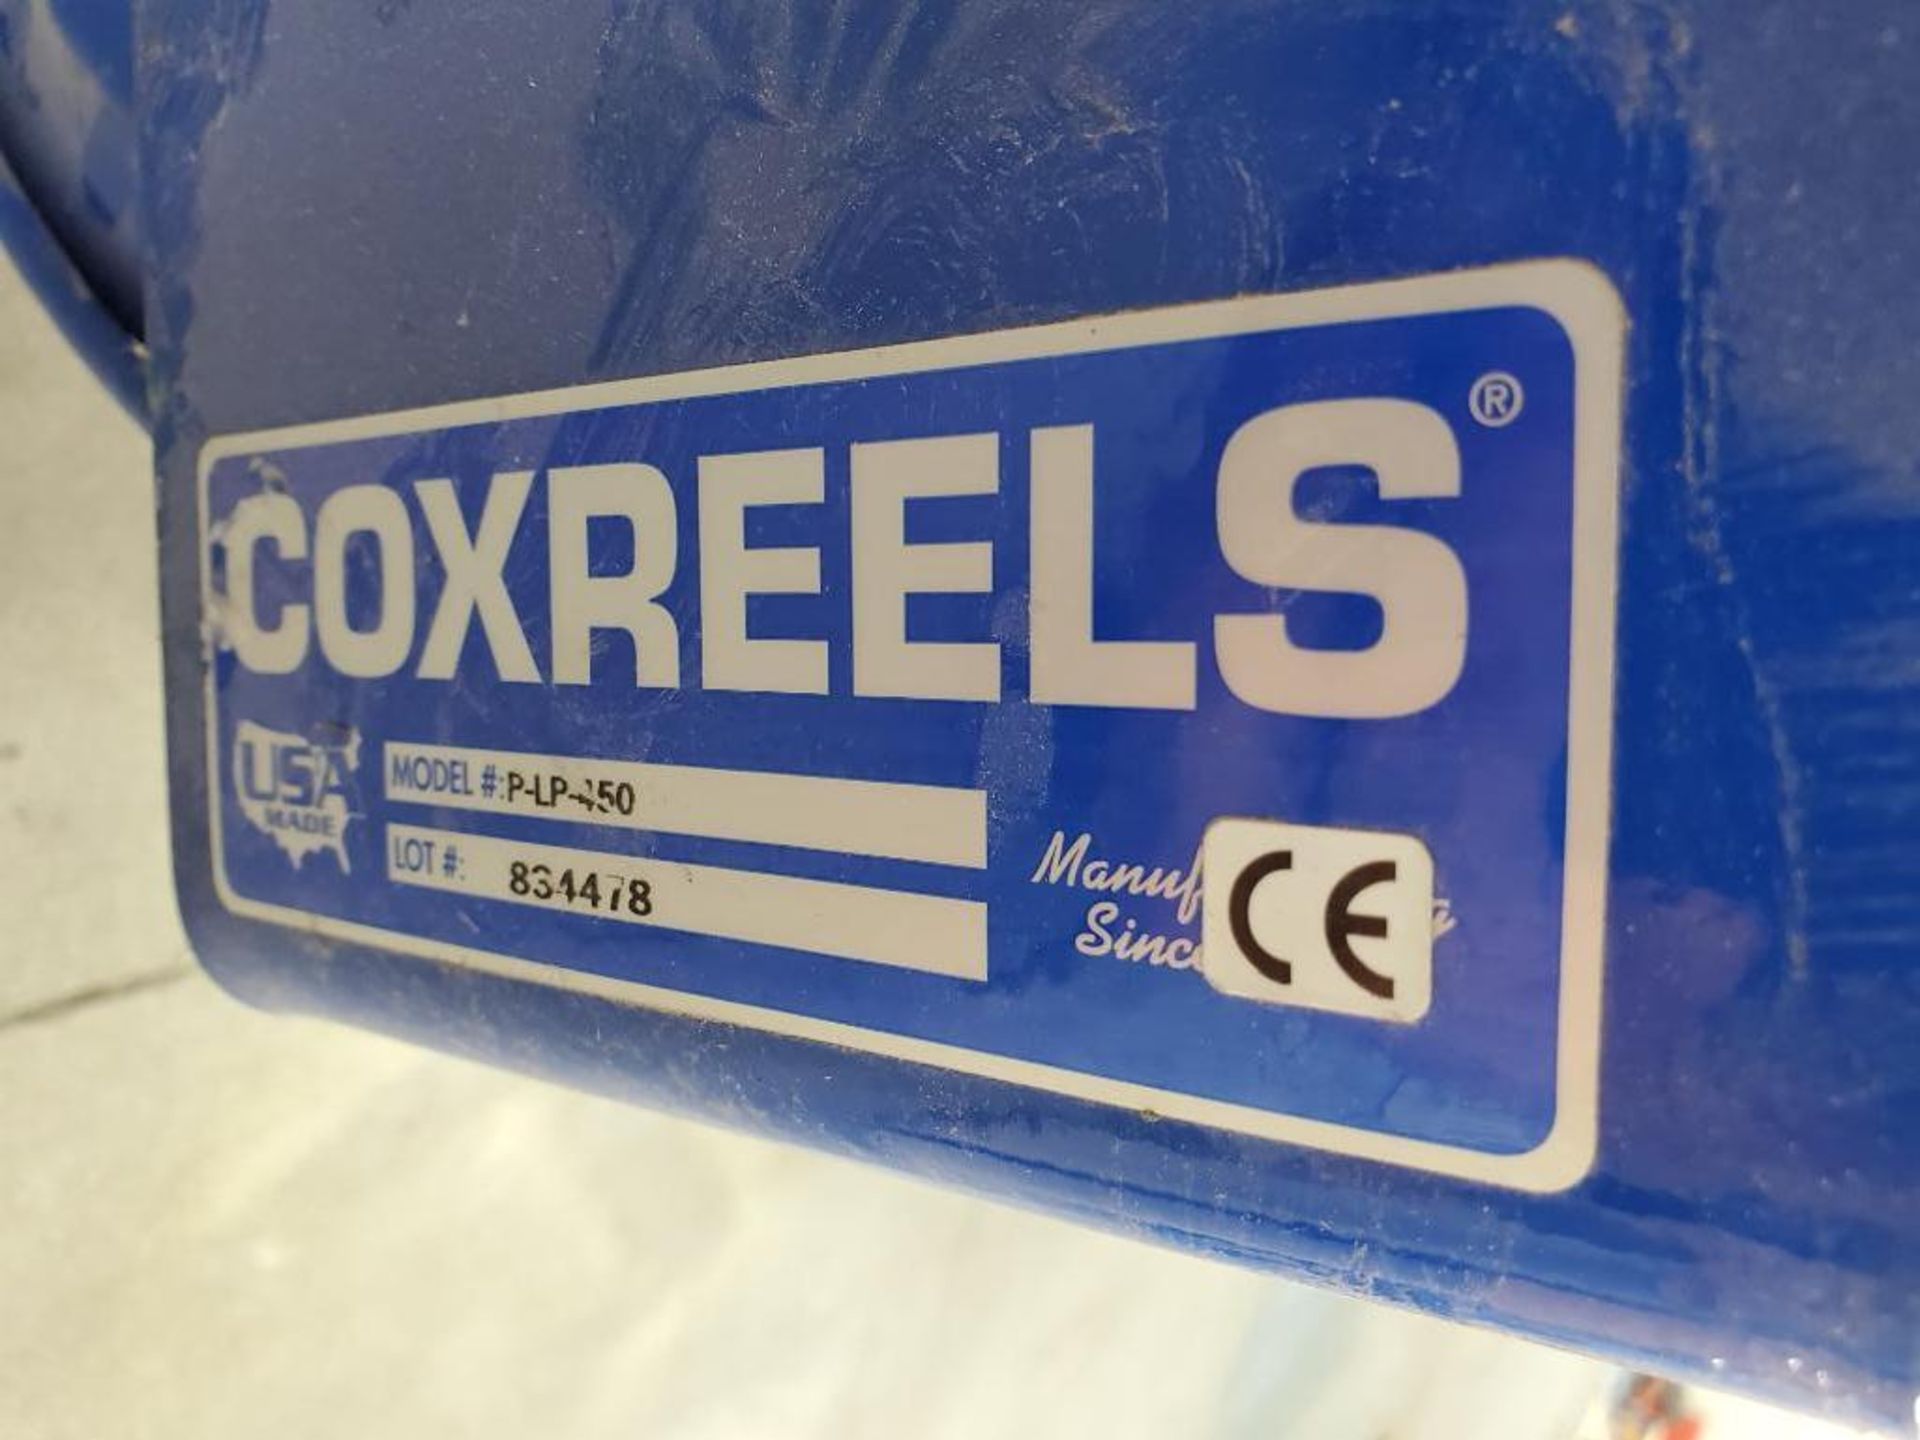 Cox Reels Hose Reel, Model P-LP-350 - Image 4 of 4